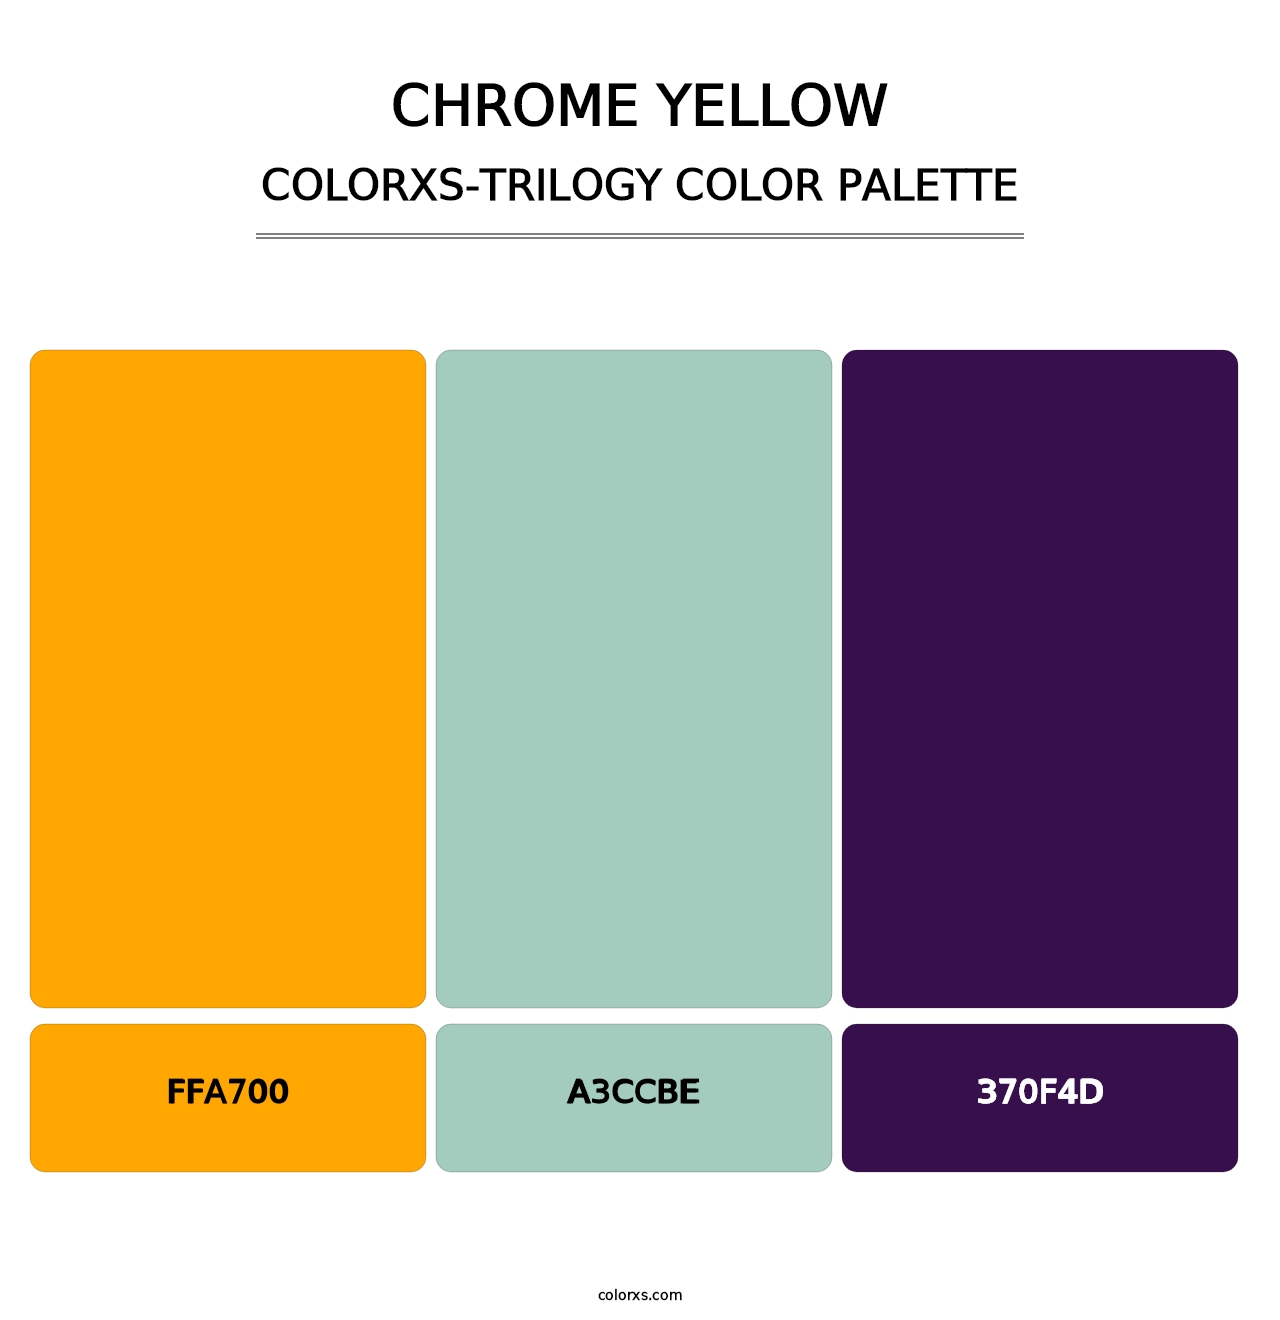 Chrome Yellow - Colorxs Trilogy Palette